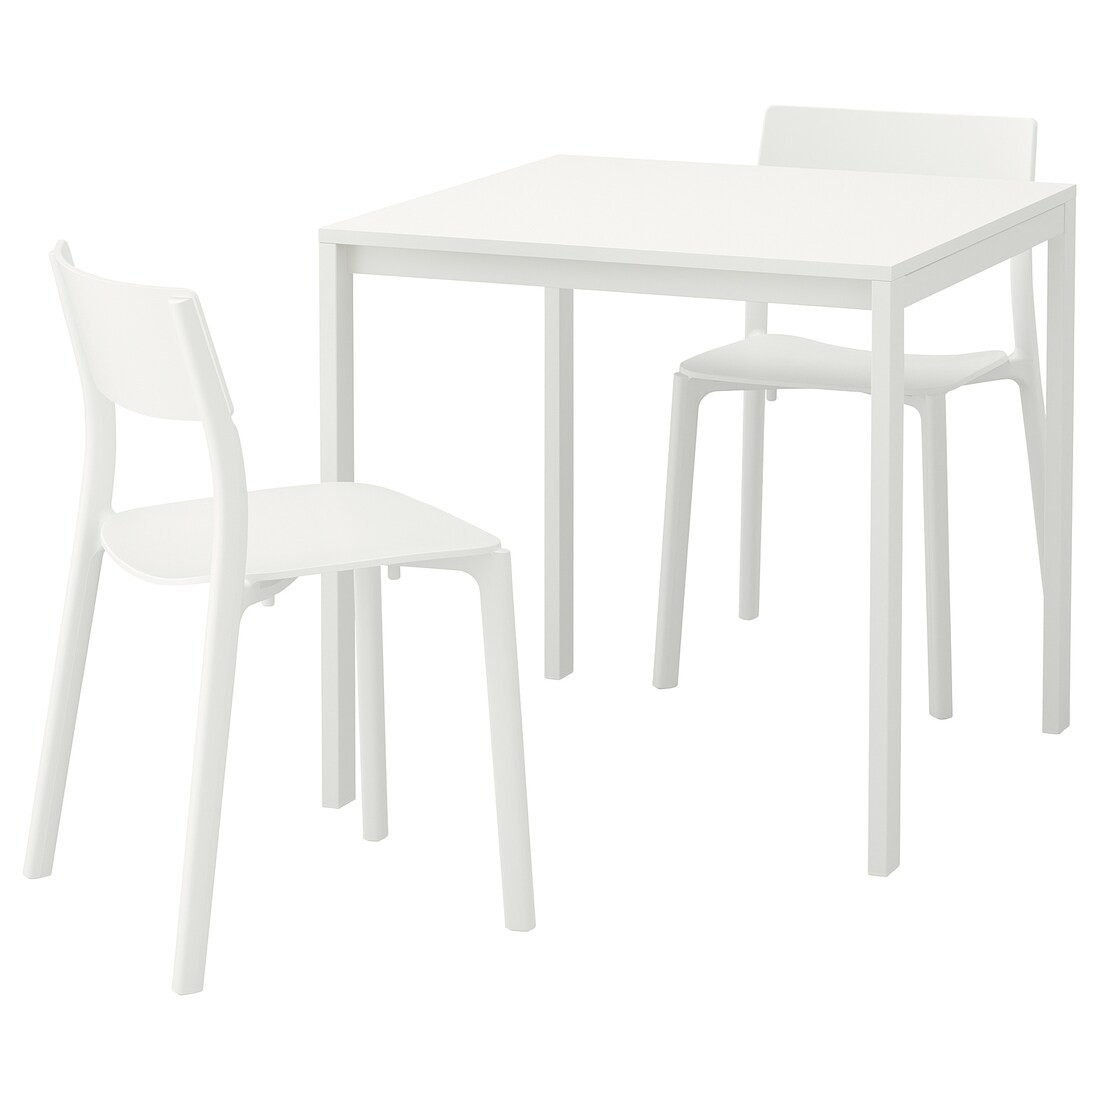 MELLTORP / JANINGE Стол и 2 стула, белый / белый, 75 см